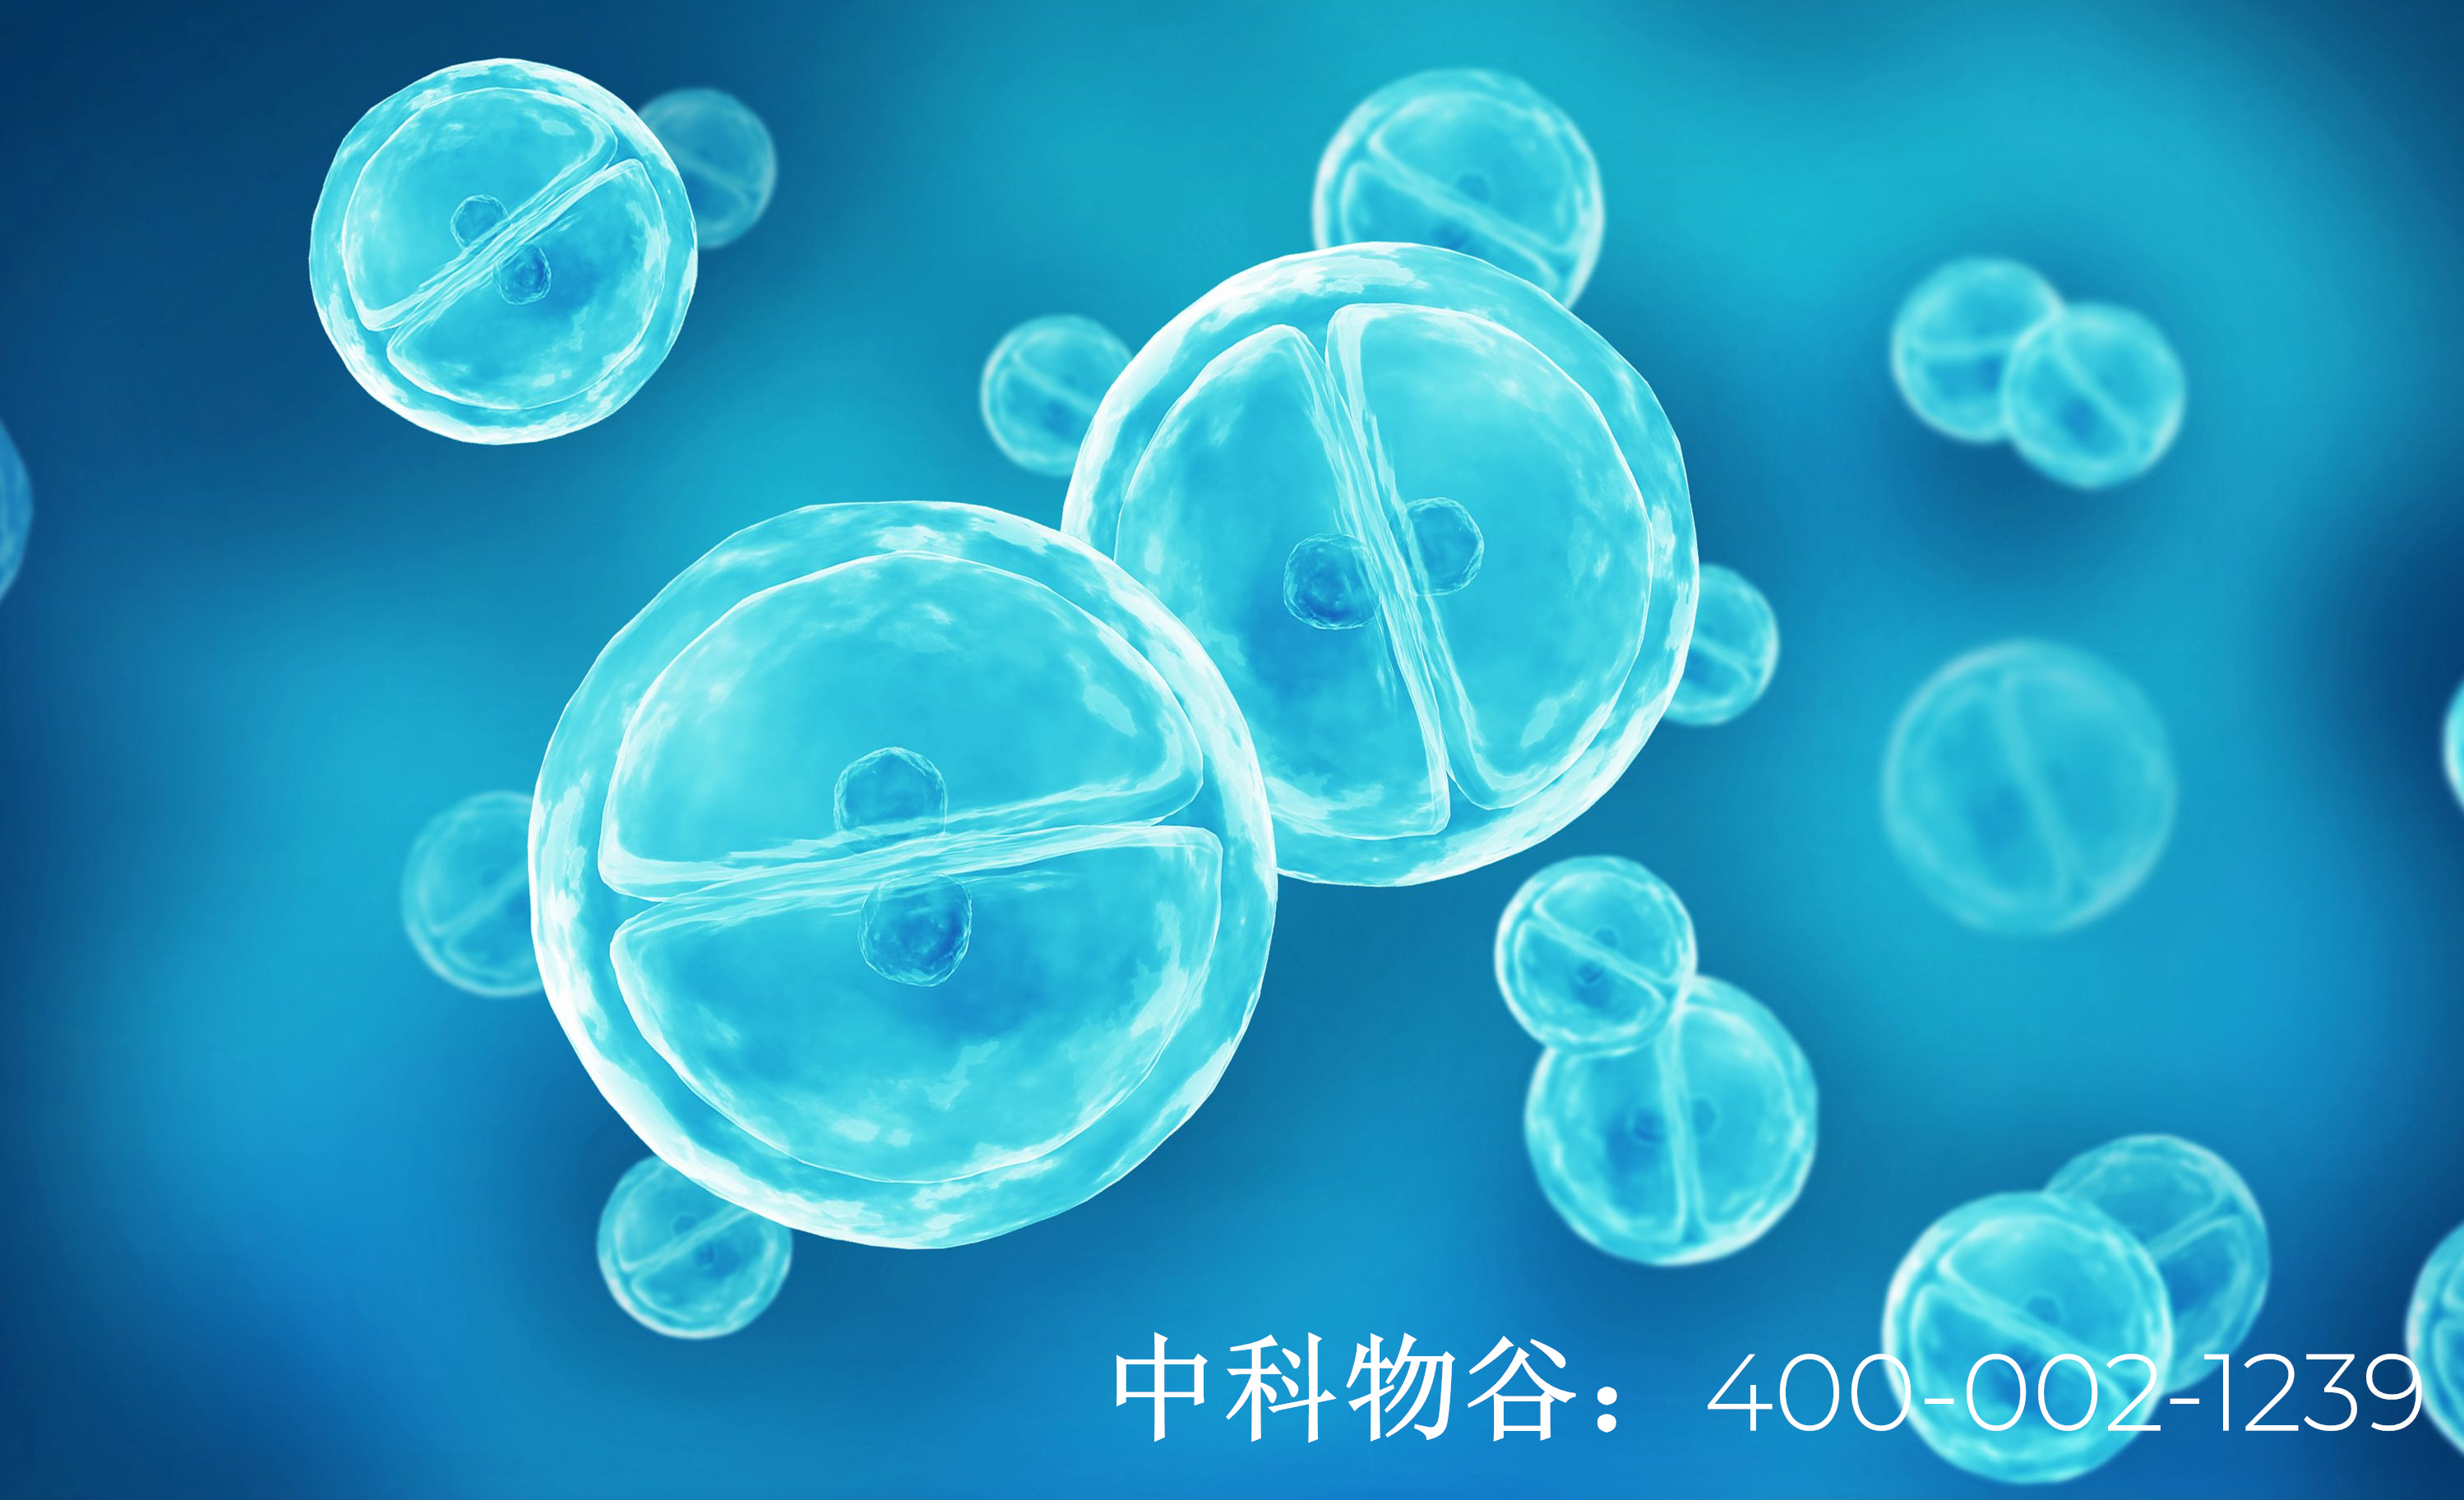 北京哪个医院有肾癌生物免疫疗法治疗效果好吗